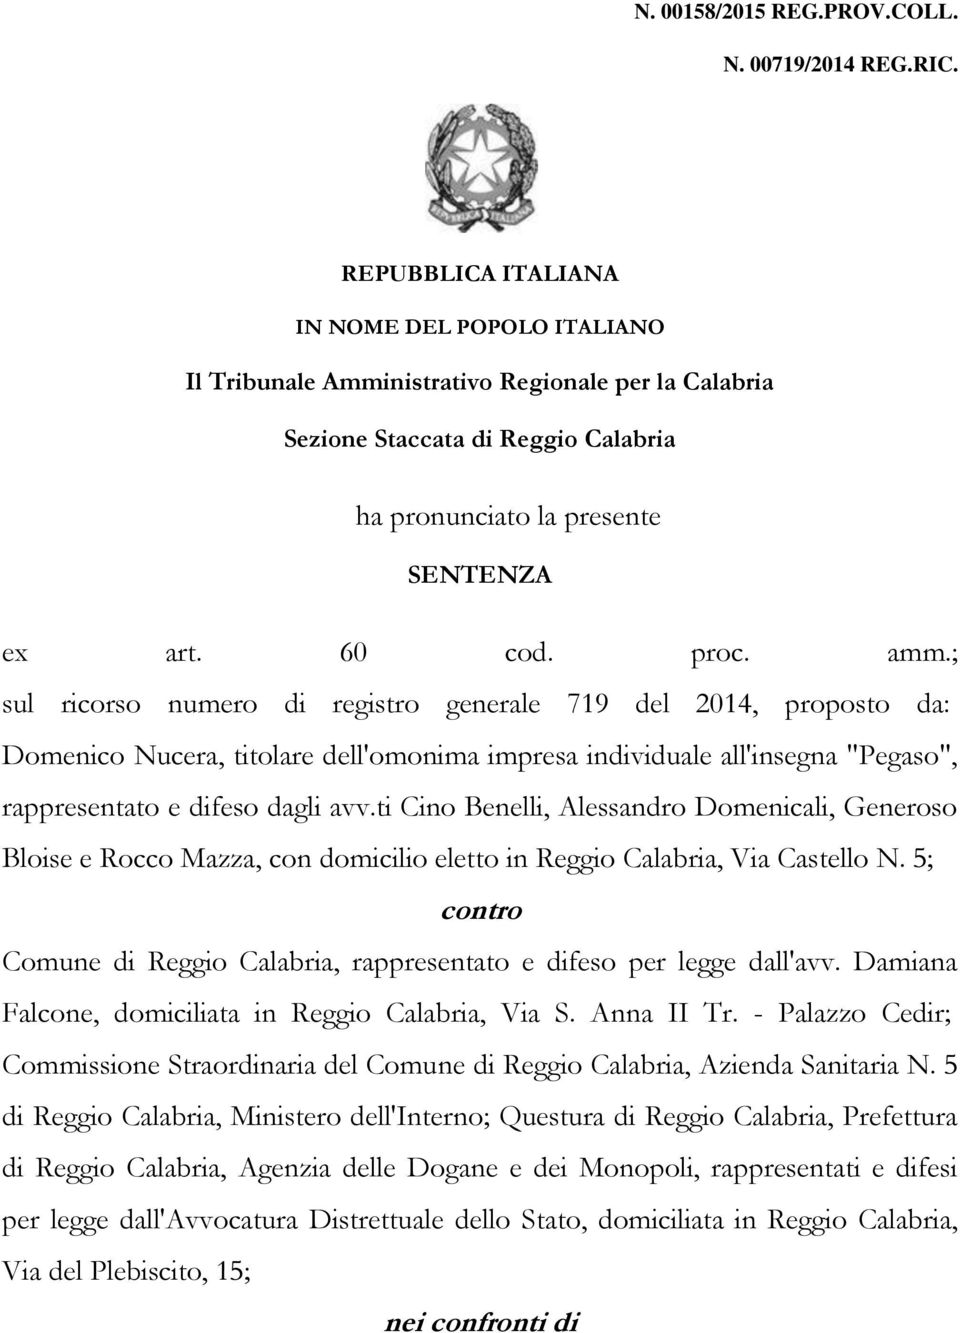 ; sul ricorso numero di registro generale 719 del 2014, proposto da: Domenico Nucera, titolare dell'omonima impresa individuale all'insegna "Pegaso", rappresentato e difeso dagli avv.